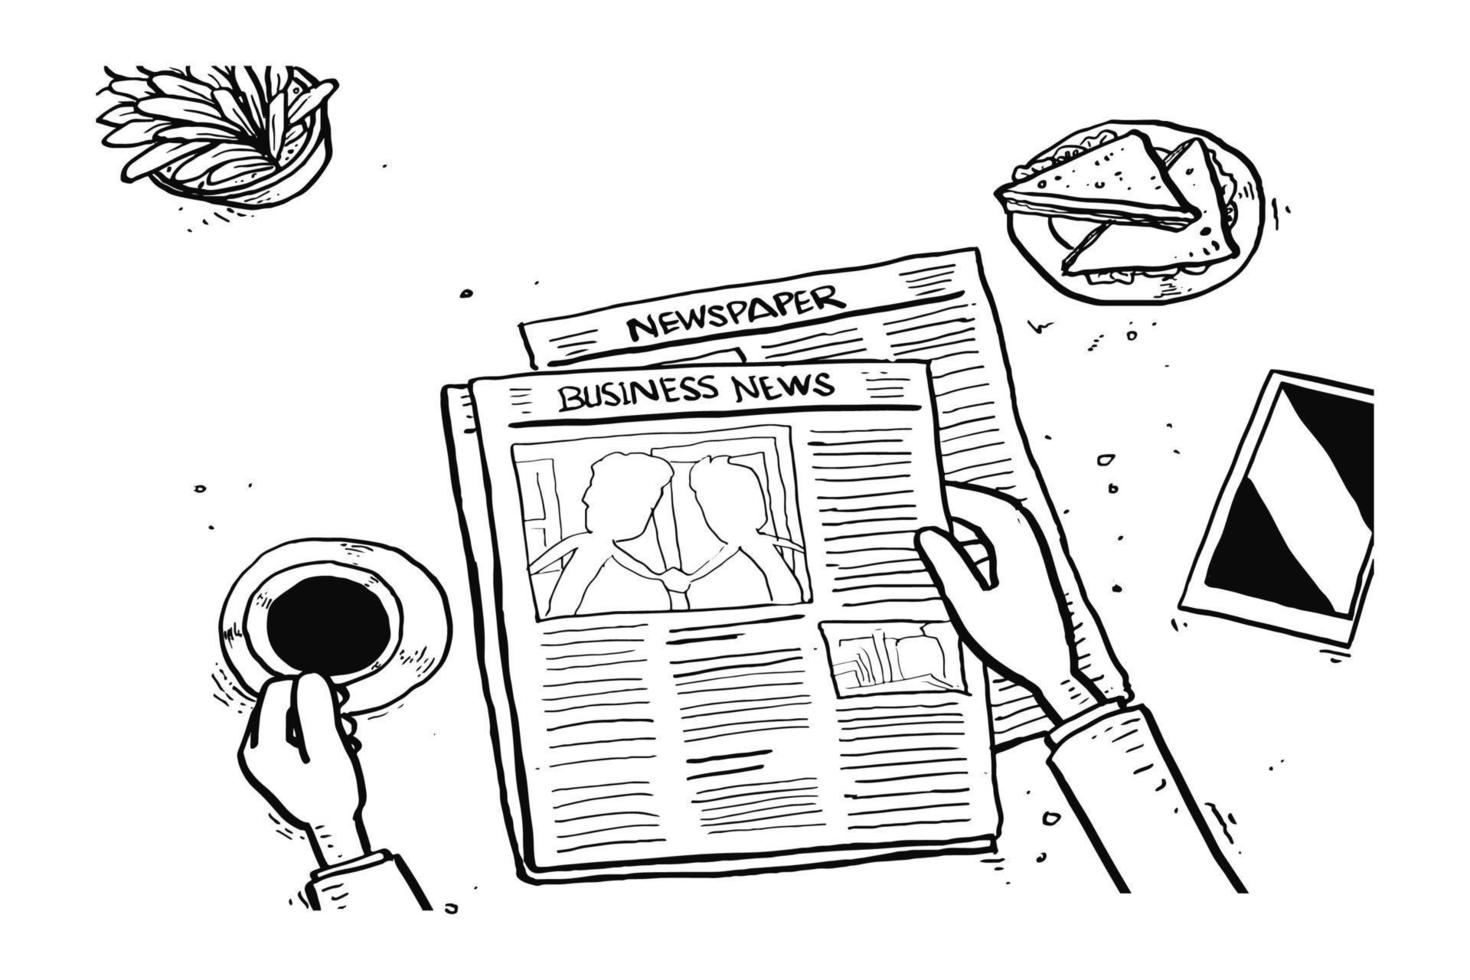 leggendo i giornali al mattino con una tazza di caffè e un panino. disegno dell'illustrazione di vettore del fumetto